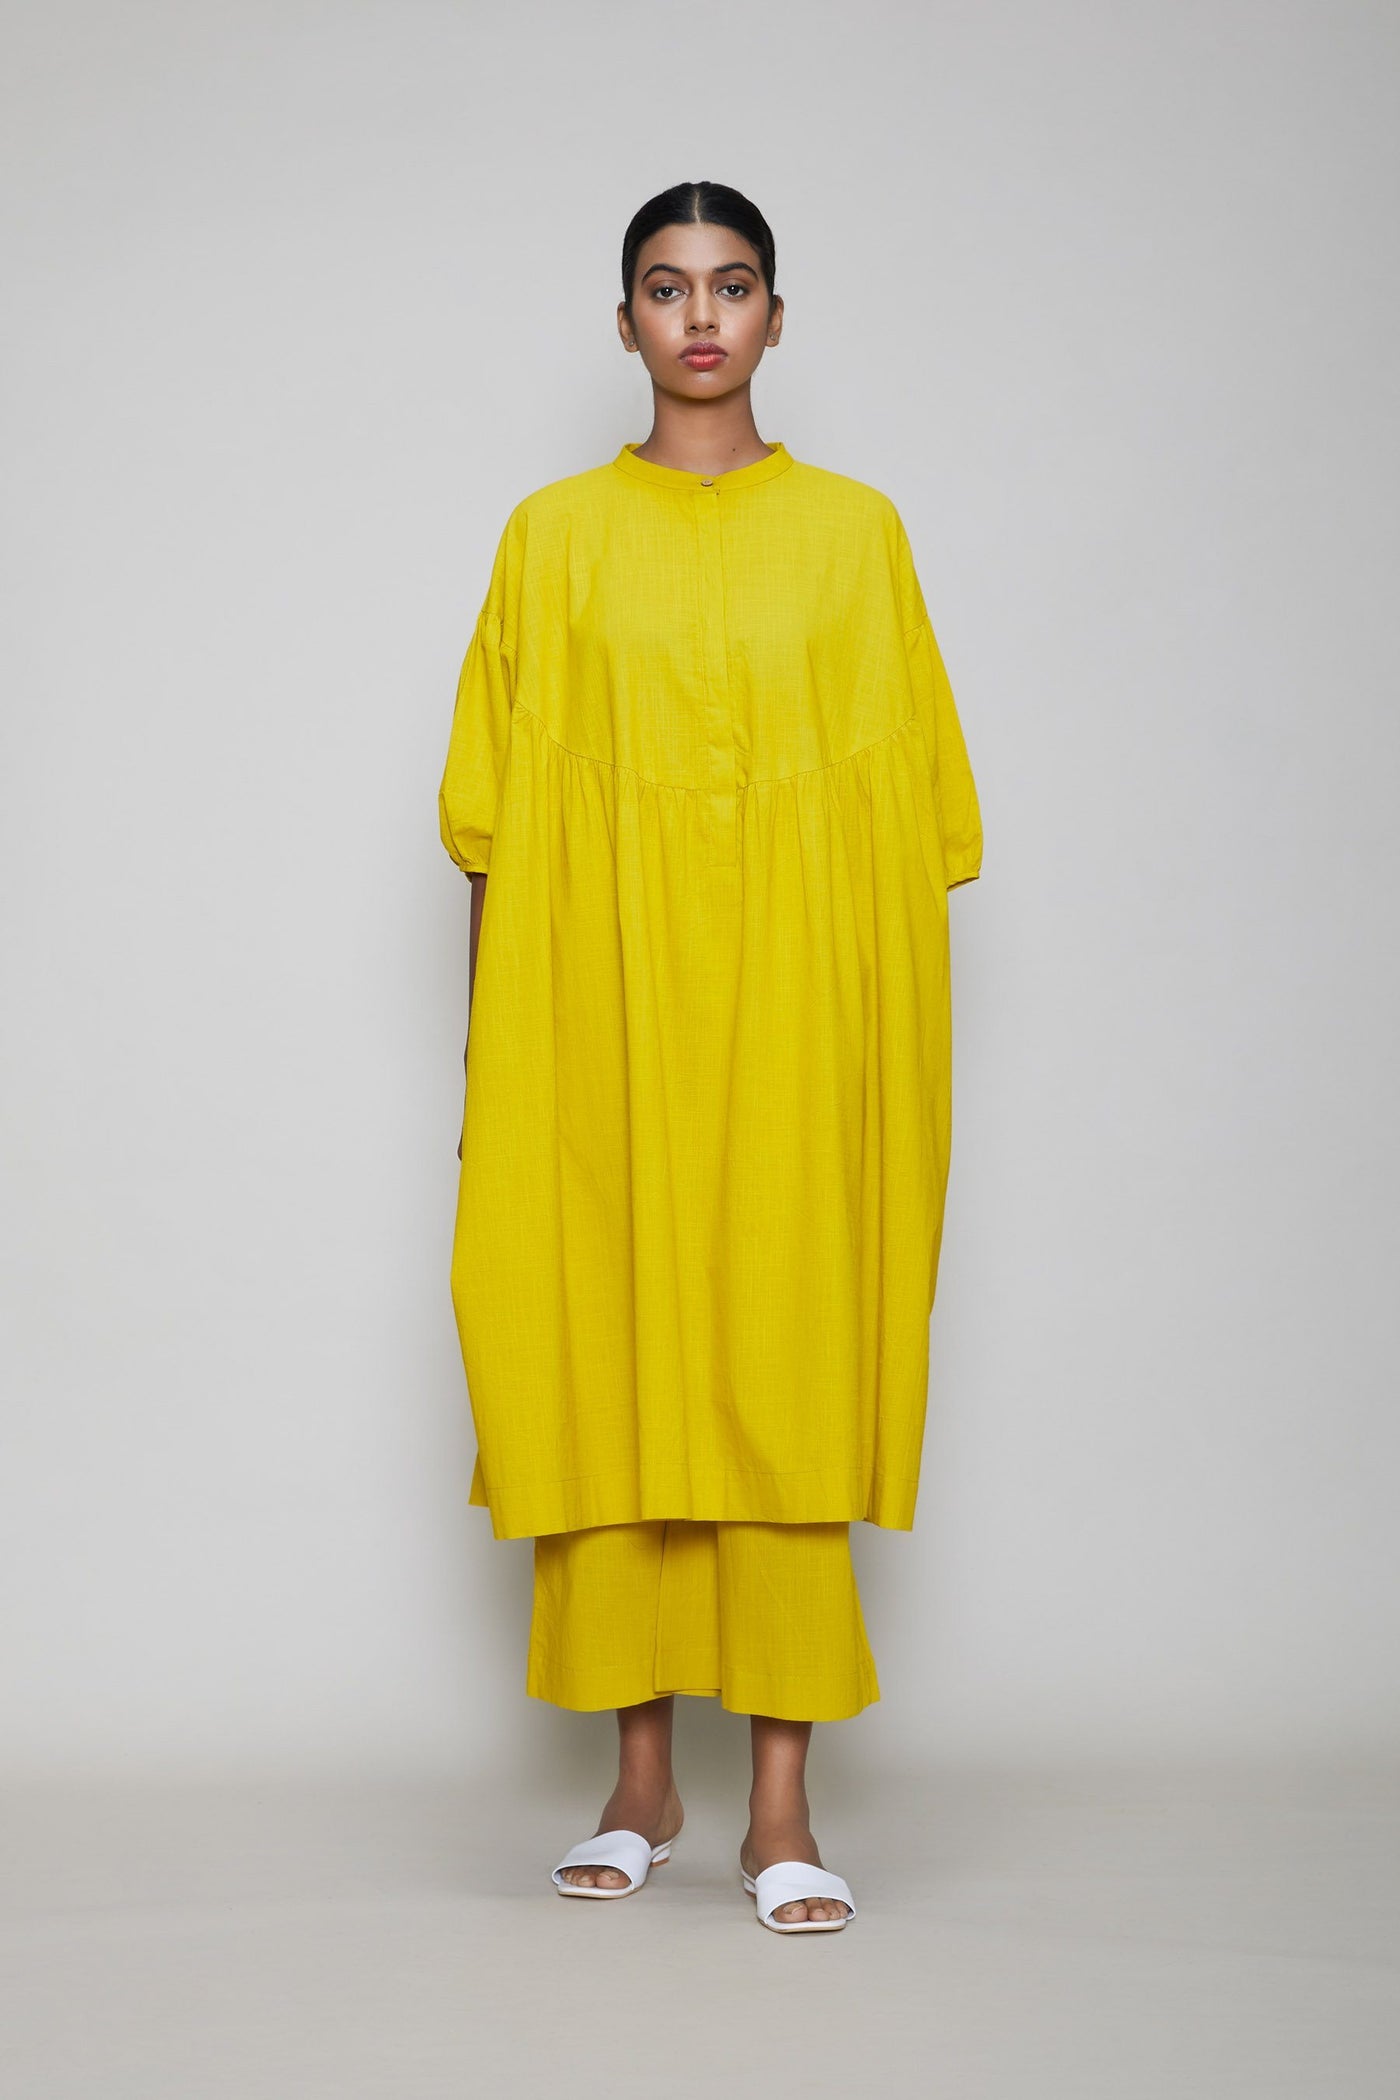 MATI ACRA TUNIC DRESS - Yellow Fashion Mati